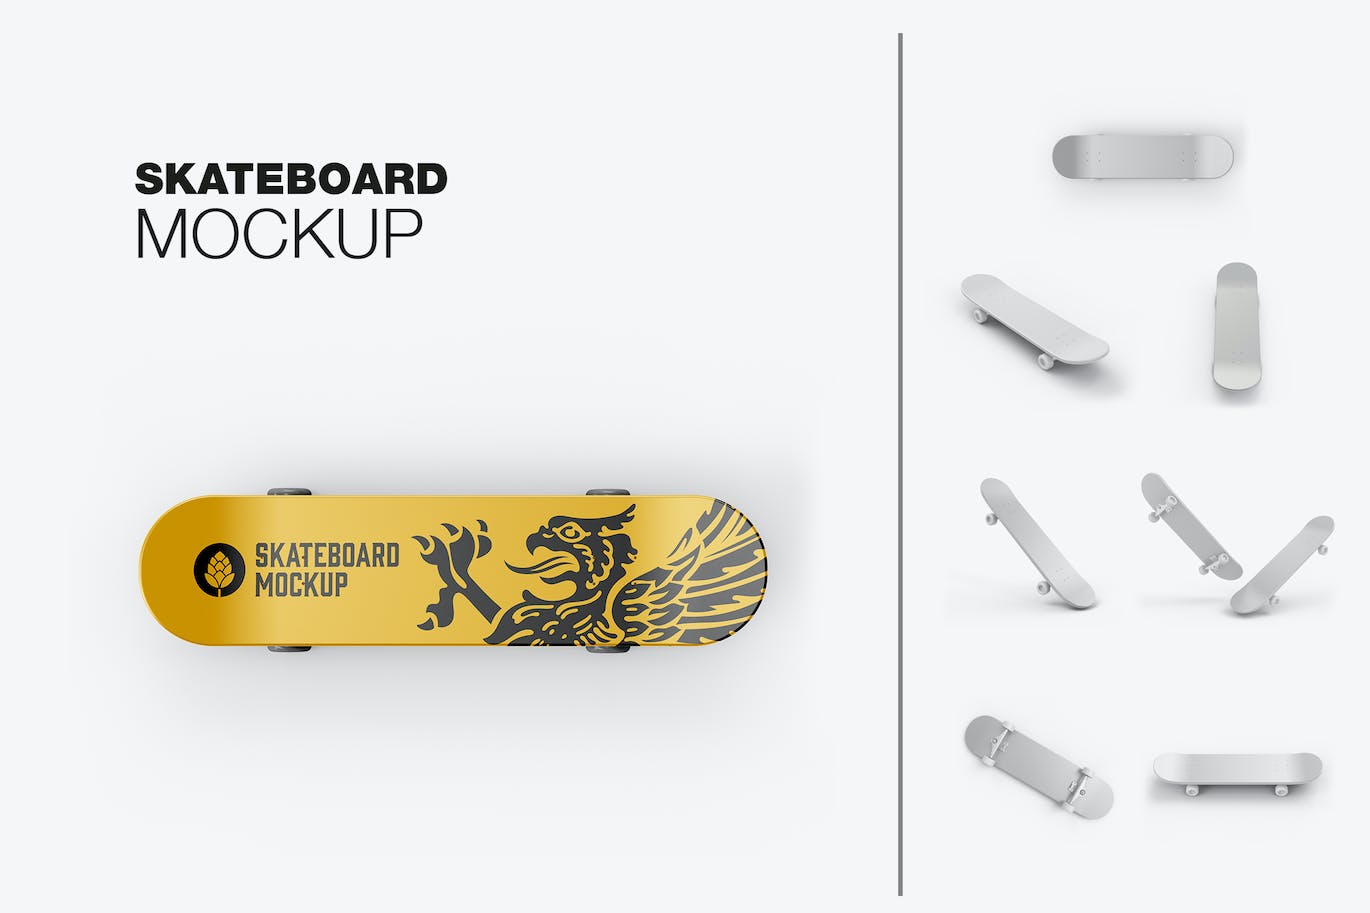 骑行滑板品牌设计样机 Skateboard Mockup 样机素材 第1张